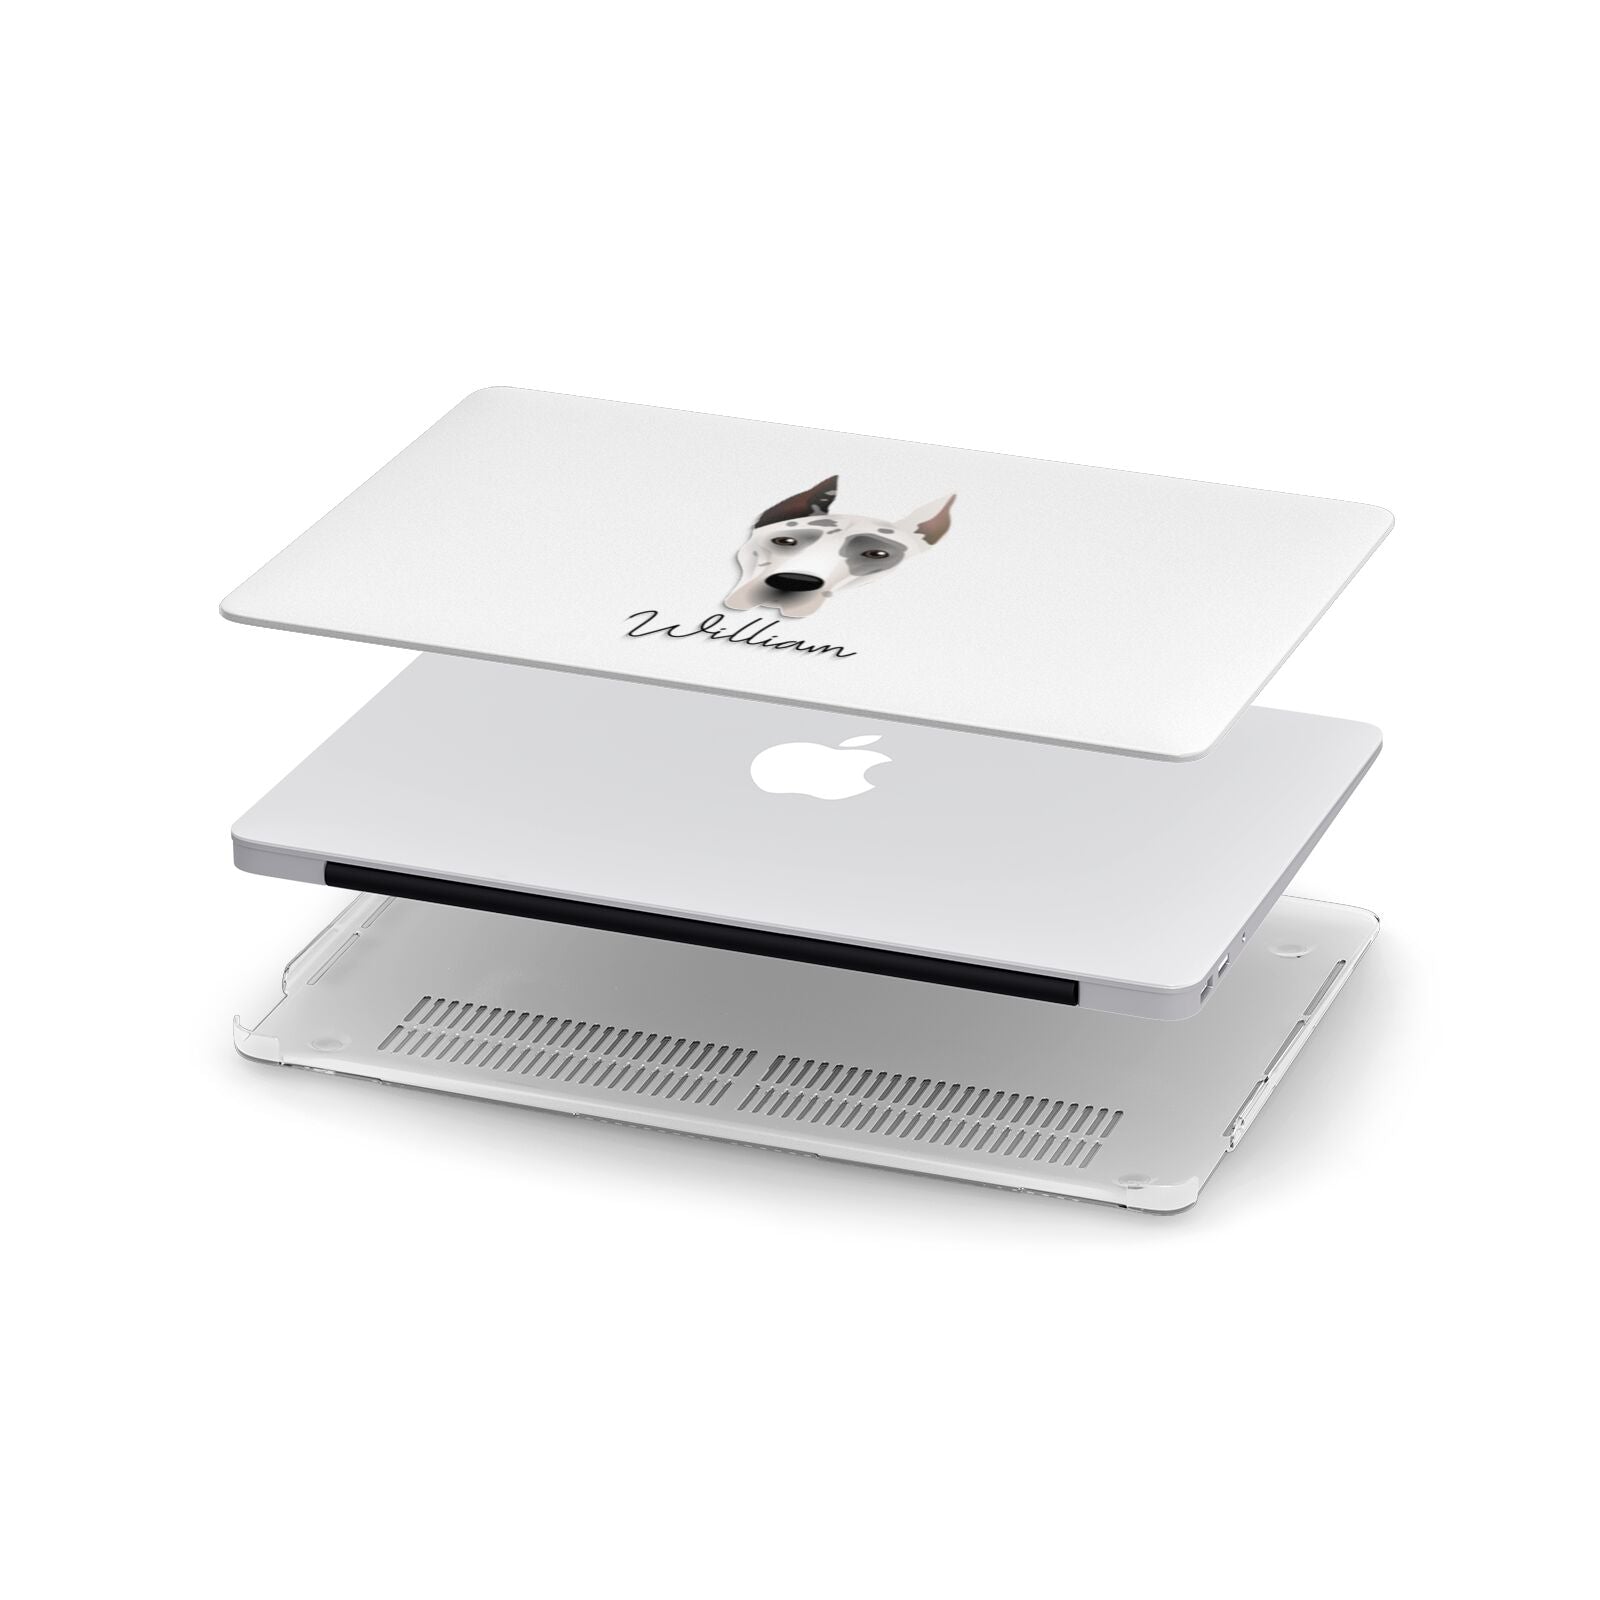 Great Dane Personalised Apple MacBook Case in Detail